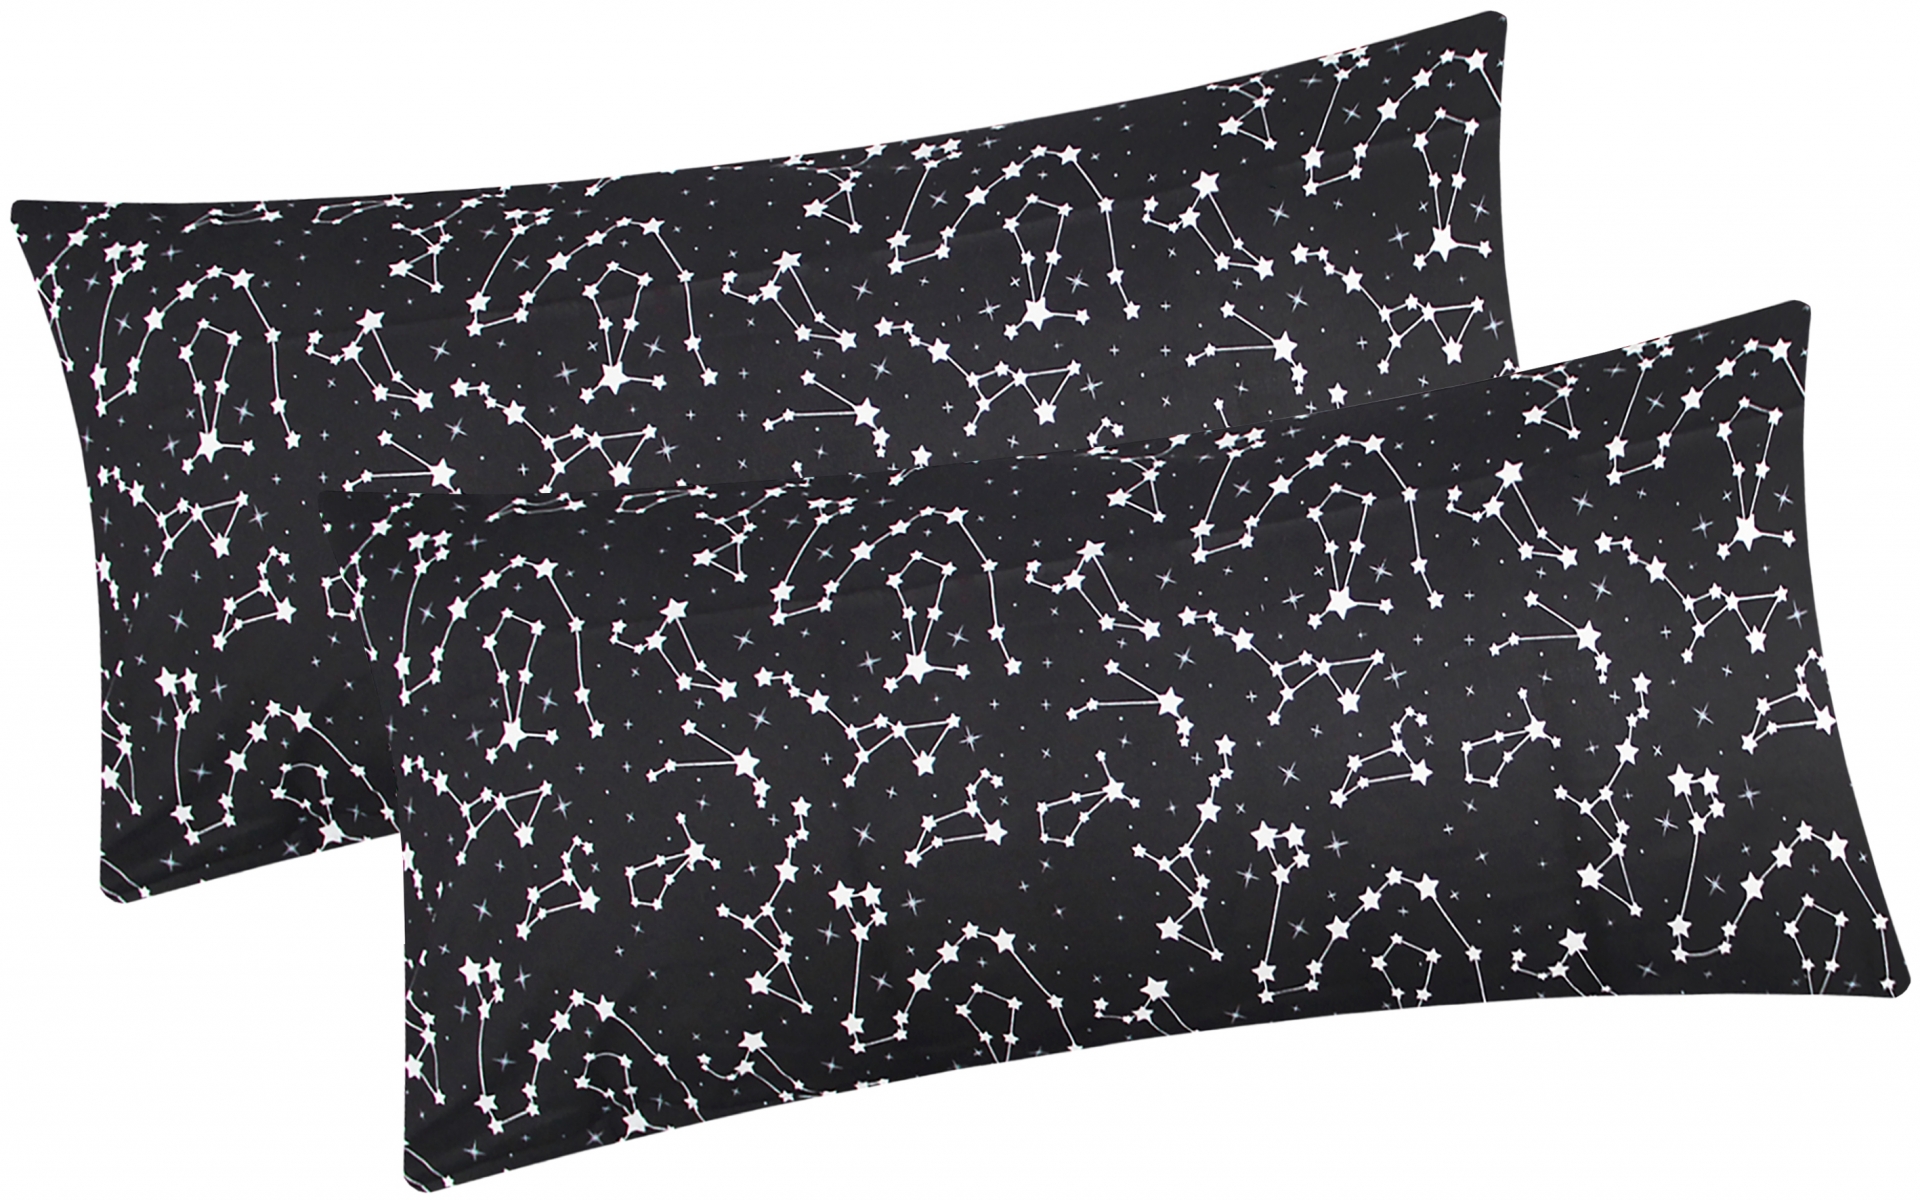 Renforcé Kissenbezug - 2er Set in 40x80cm - Sternenhimmel Sternzeichen in Schwarz und Weiß - Kopfkissen-Bezug, Kissenhülle, Dekokissenbezug aus 100% Baumwolle (KY-540/1-40x80)